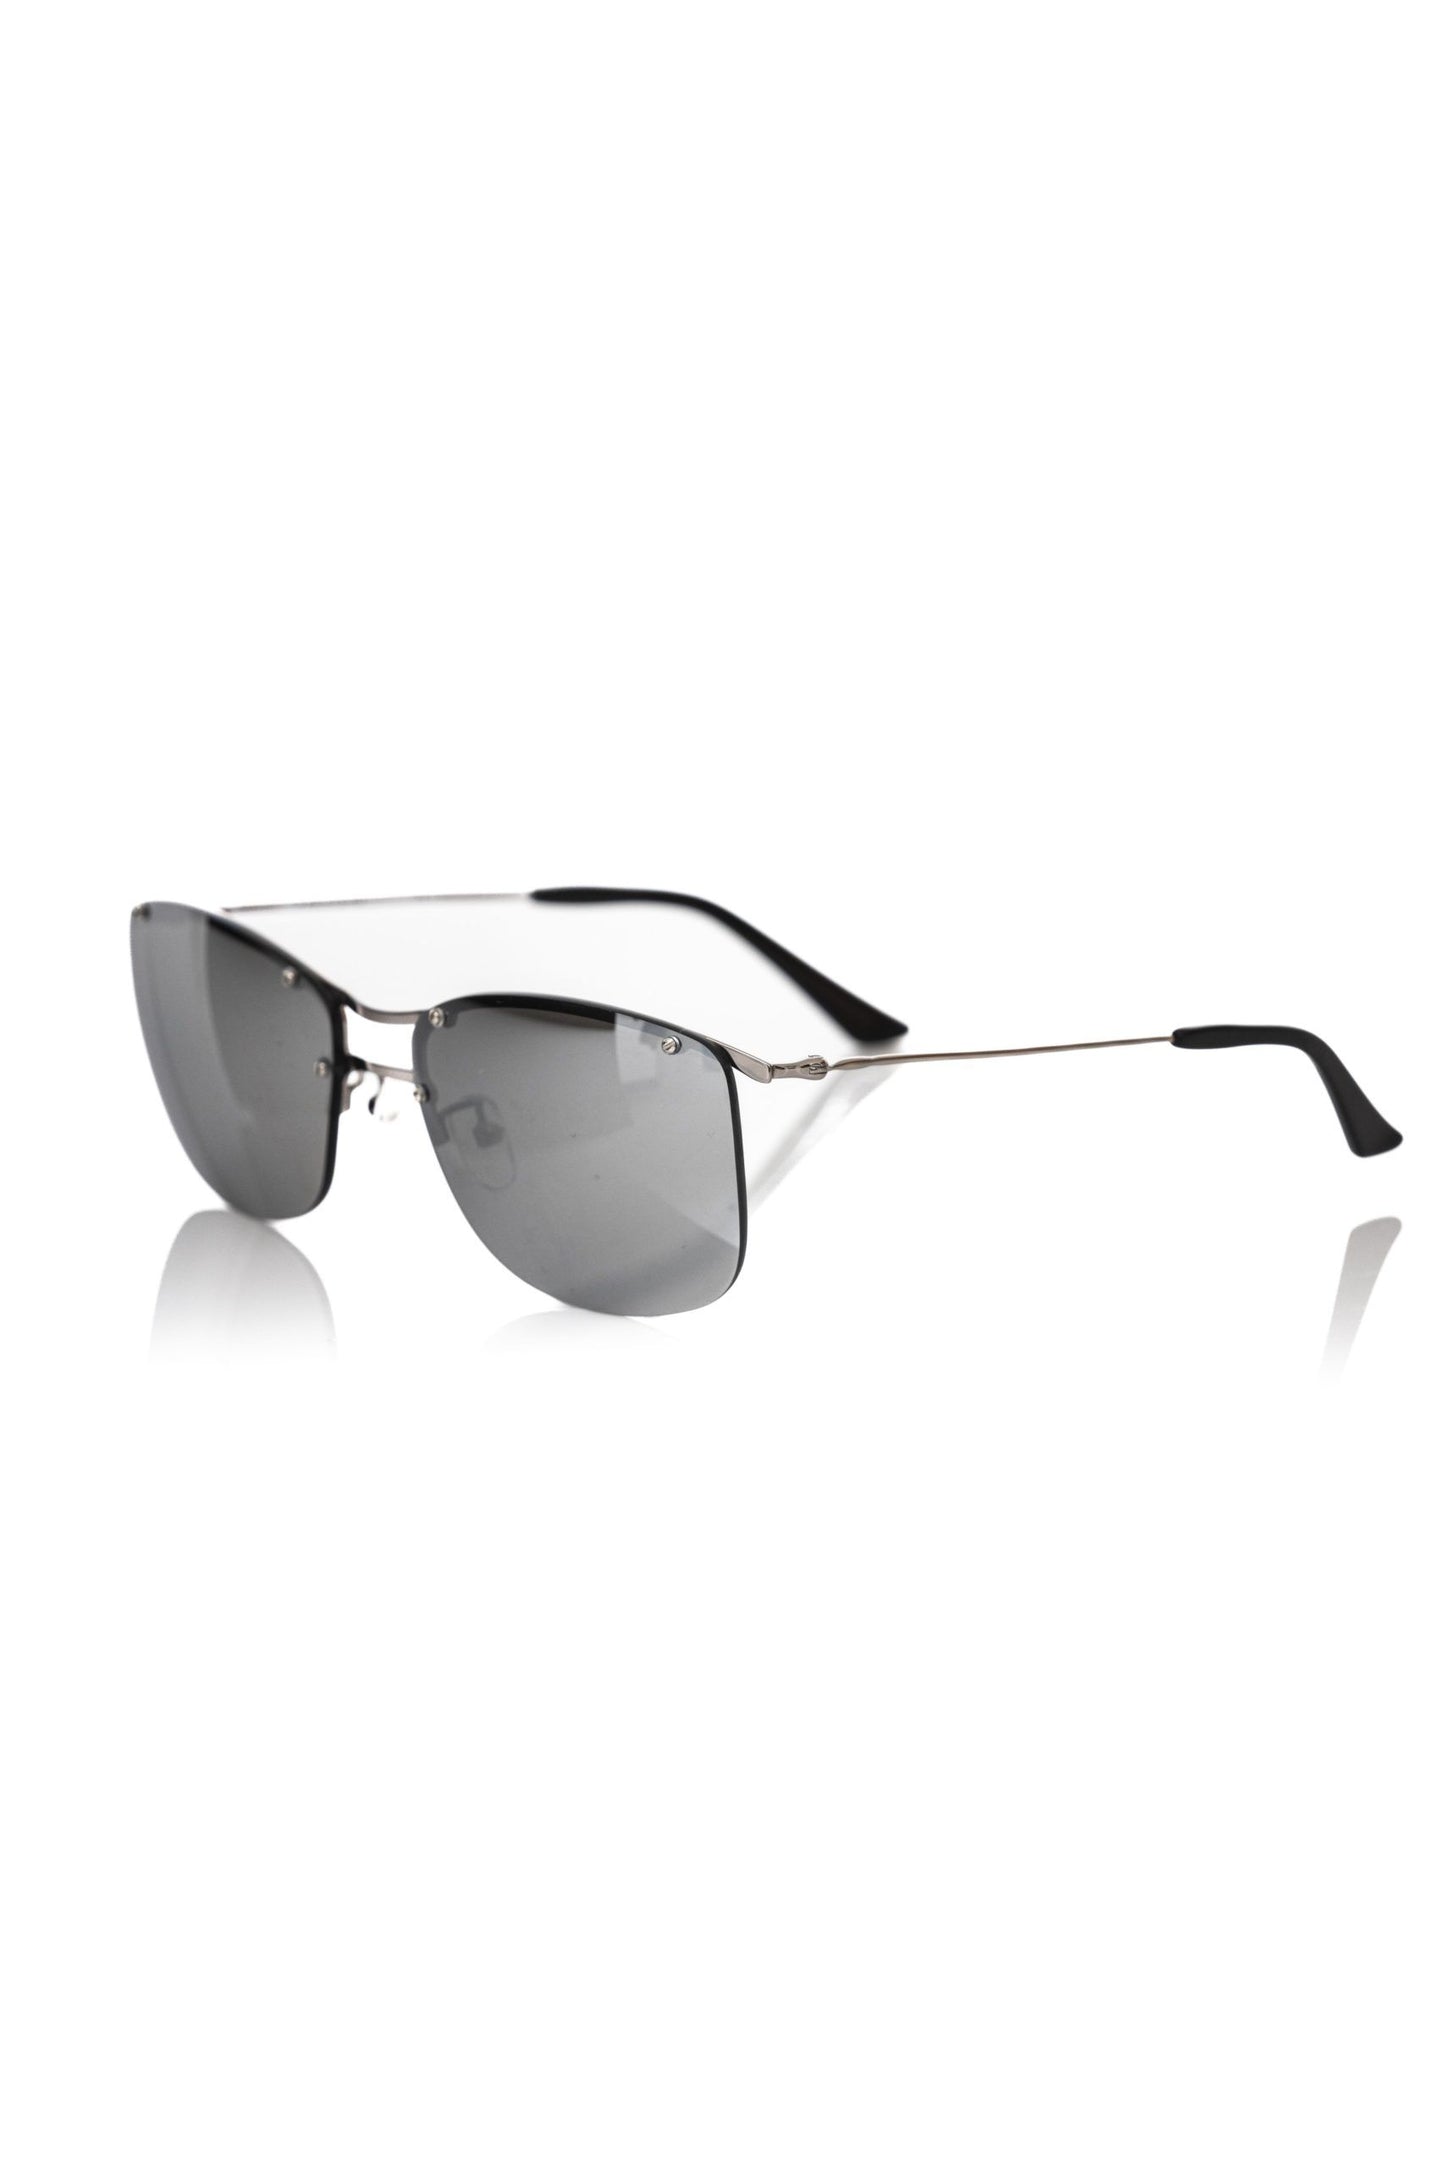 Frankie Morello FRMO-22138 Silver Metallic Fibre Sunglasses